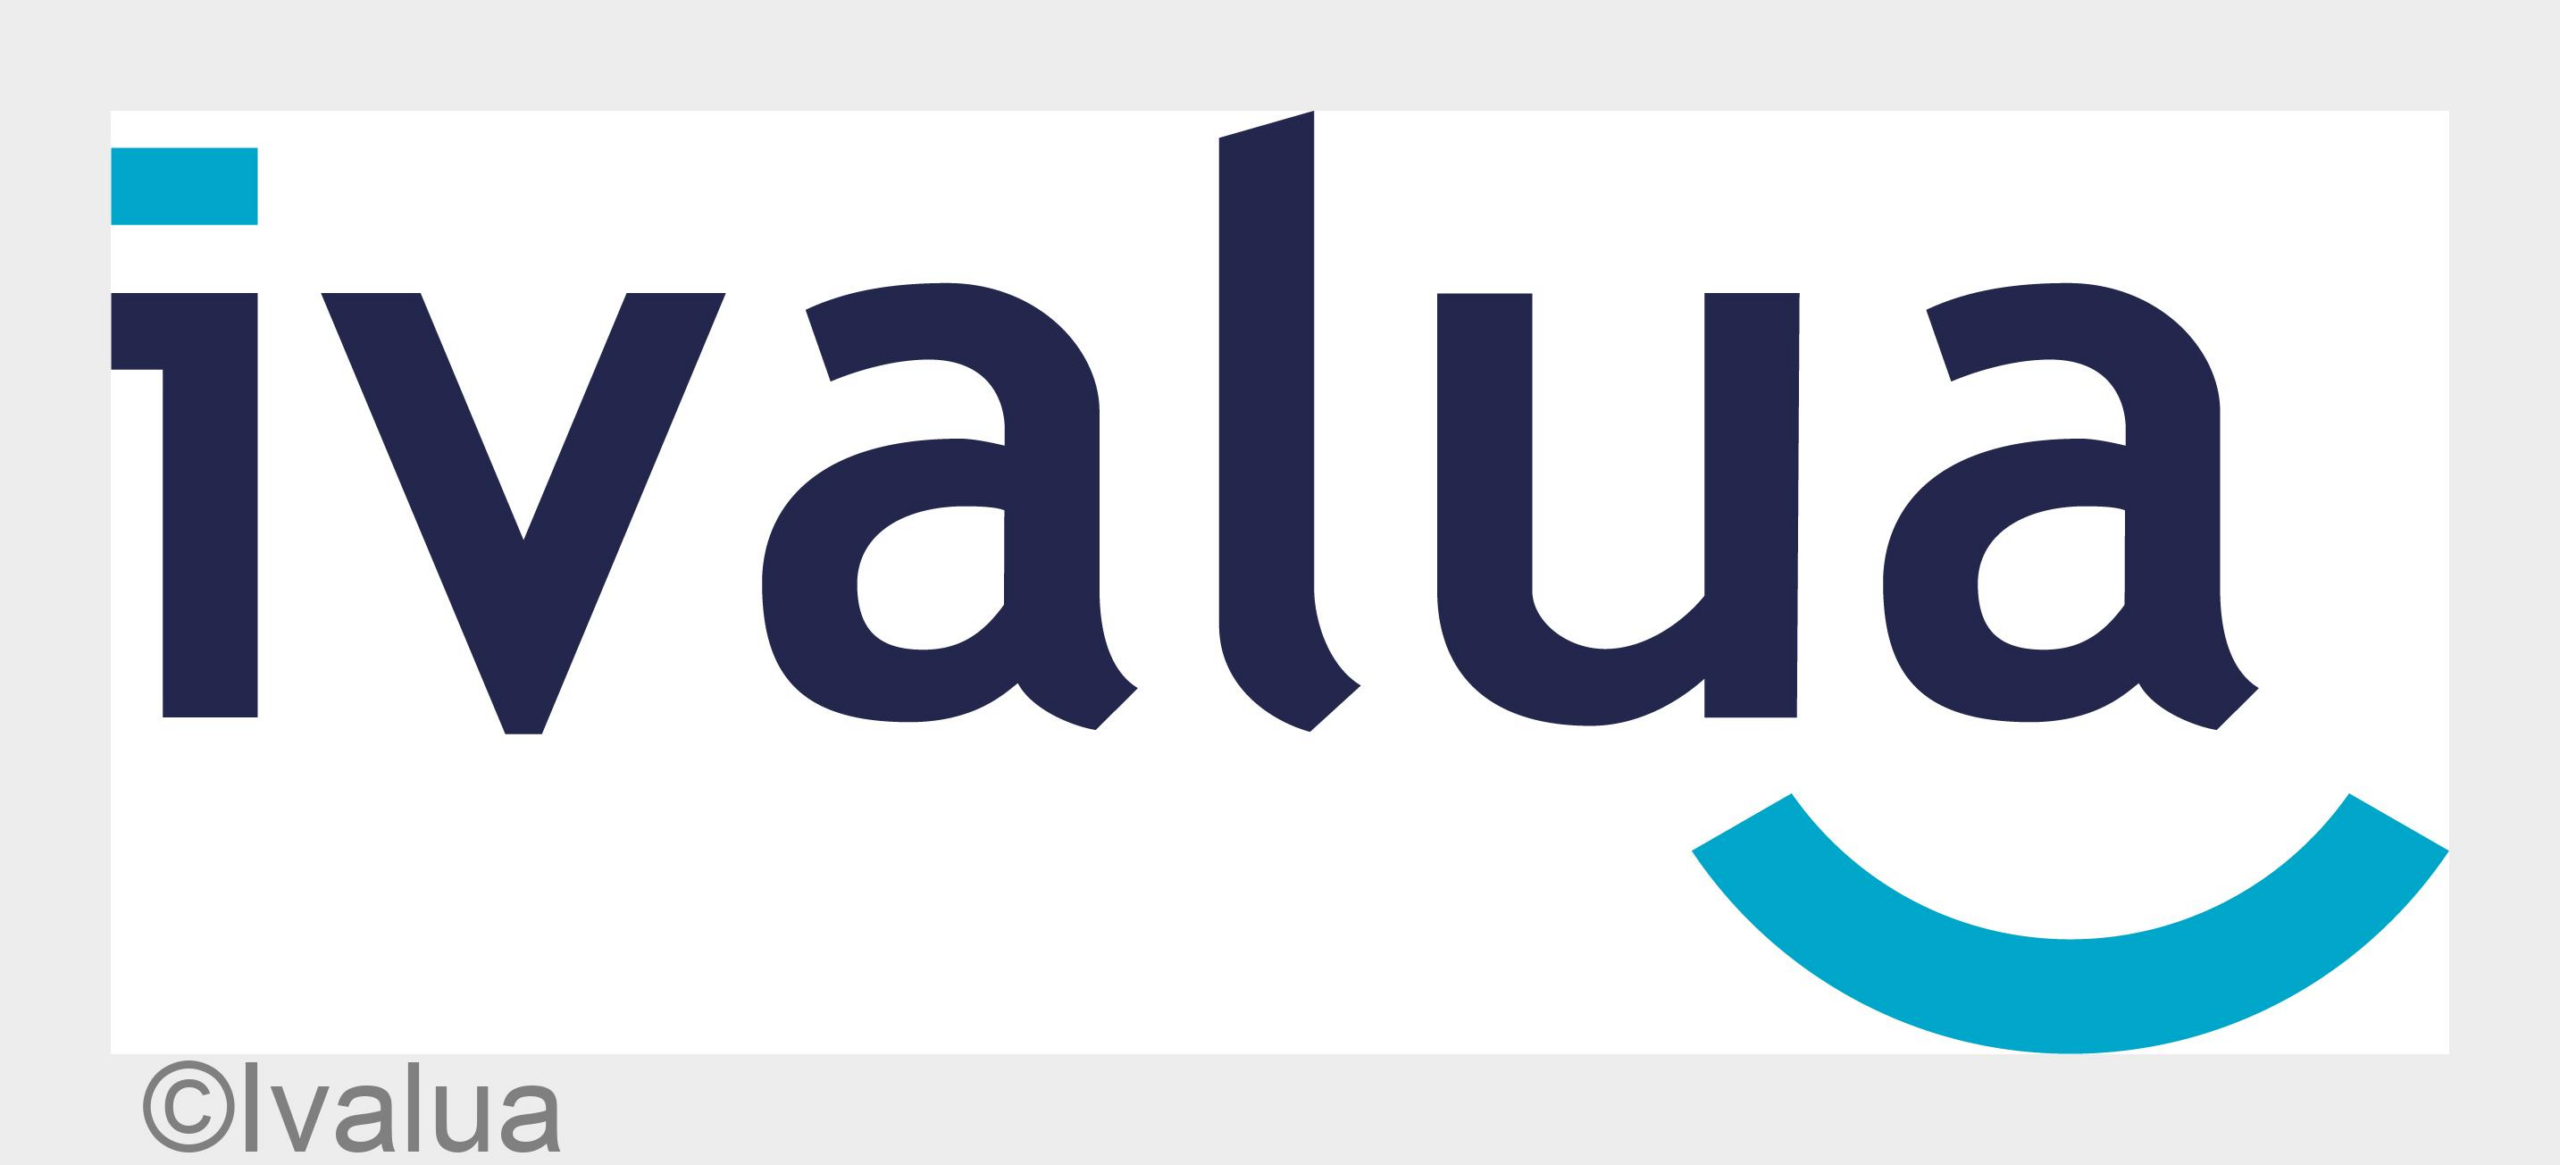 Ivalua integriert leistungsstarke KI in seine Spend-Management-Plattform